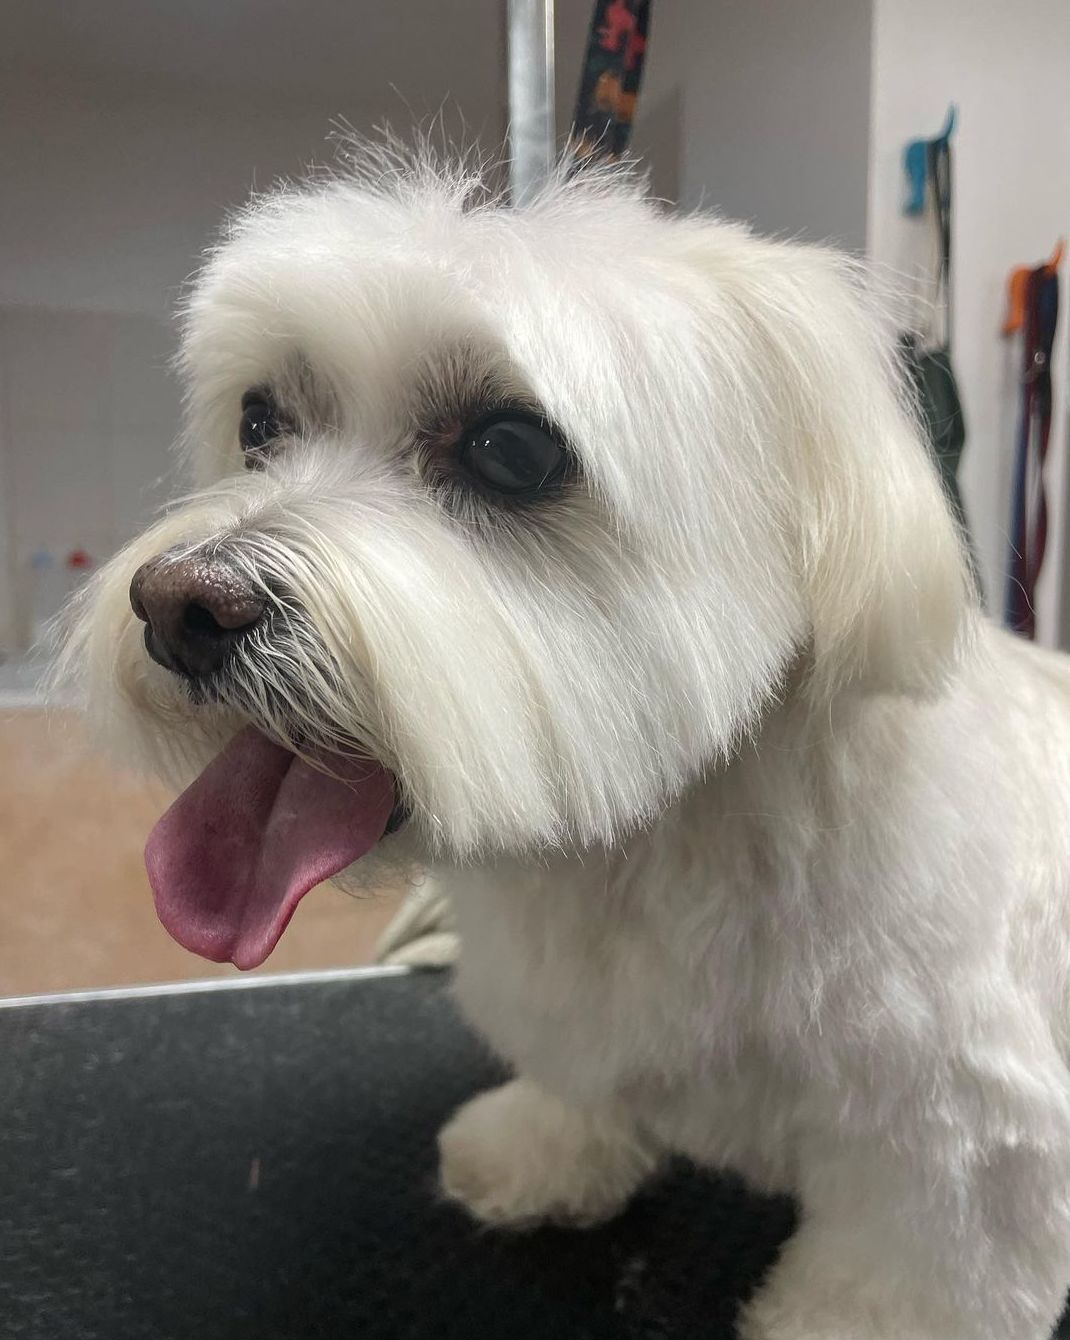 Foto 104 de Peluquería canina con todo tipo de tratamientos para tu mascota en  | Dama's